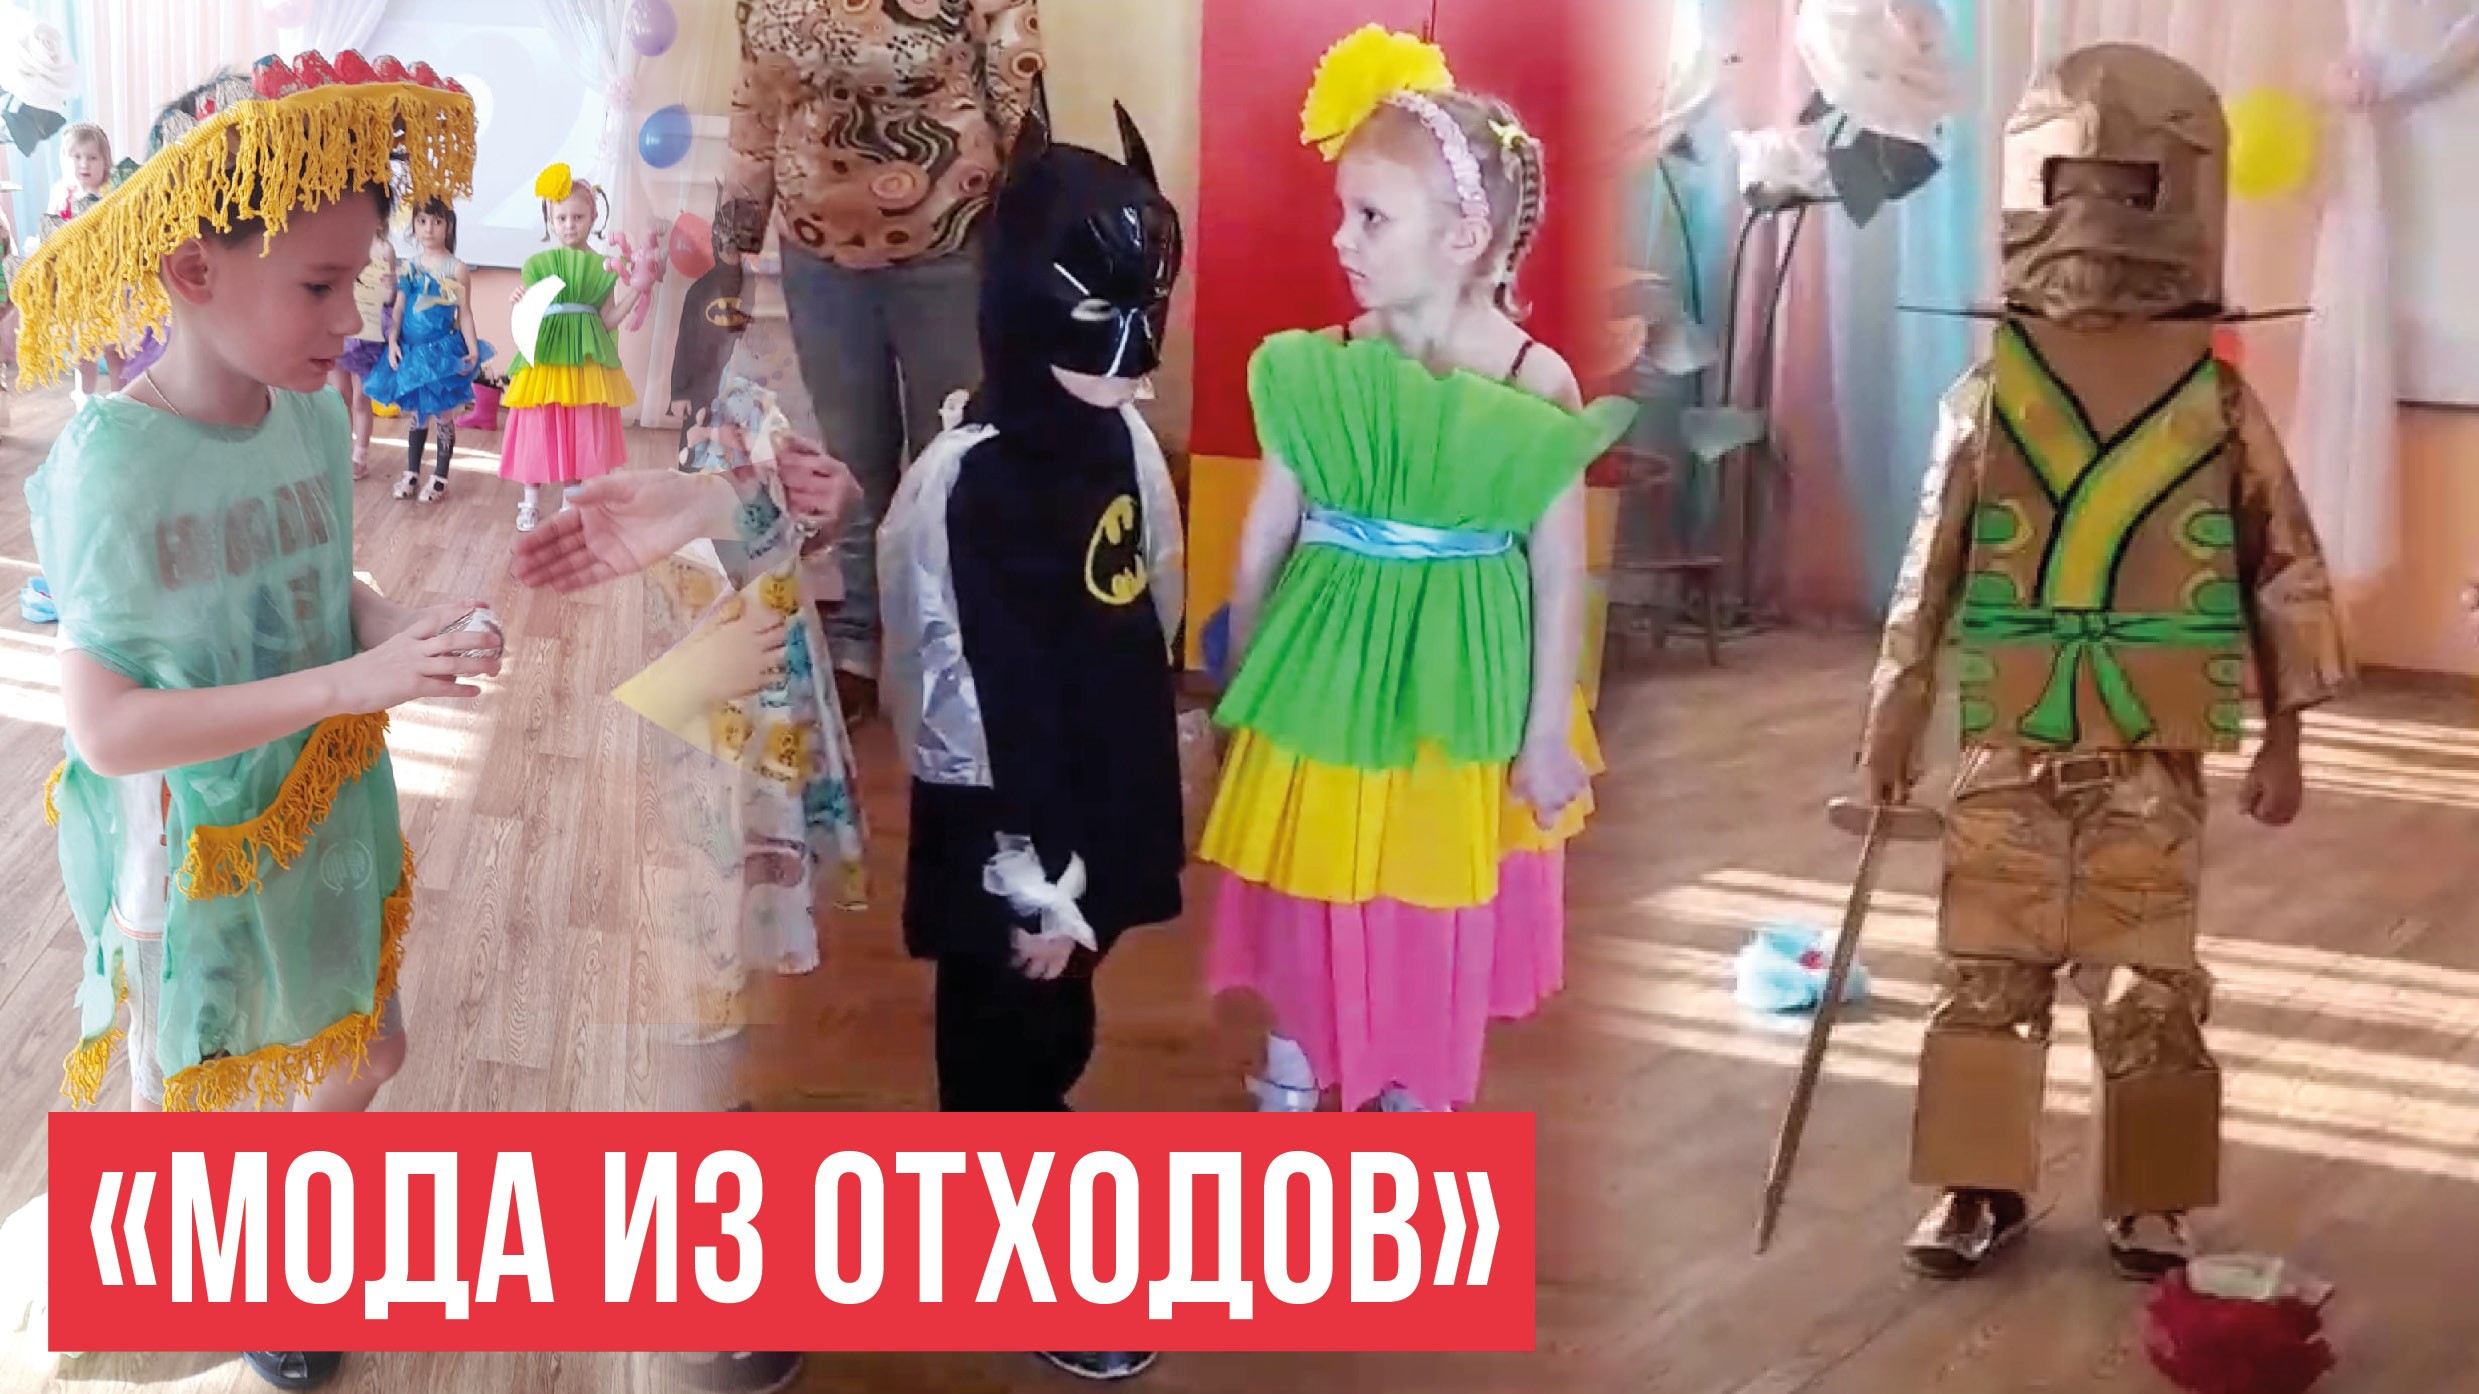 Конкурс «Мода из отходов» прошел в детском саду «Улыбка» в Йошкар-Оле